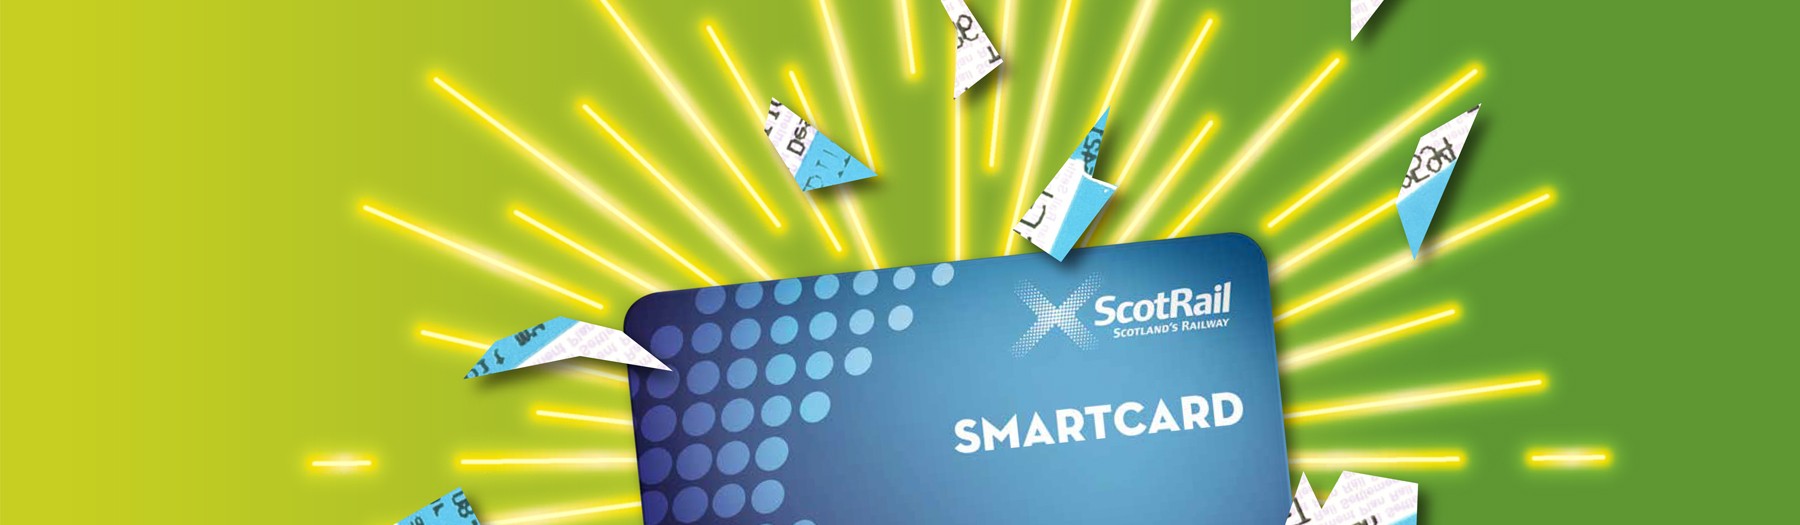 ScotRail Smartcard